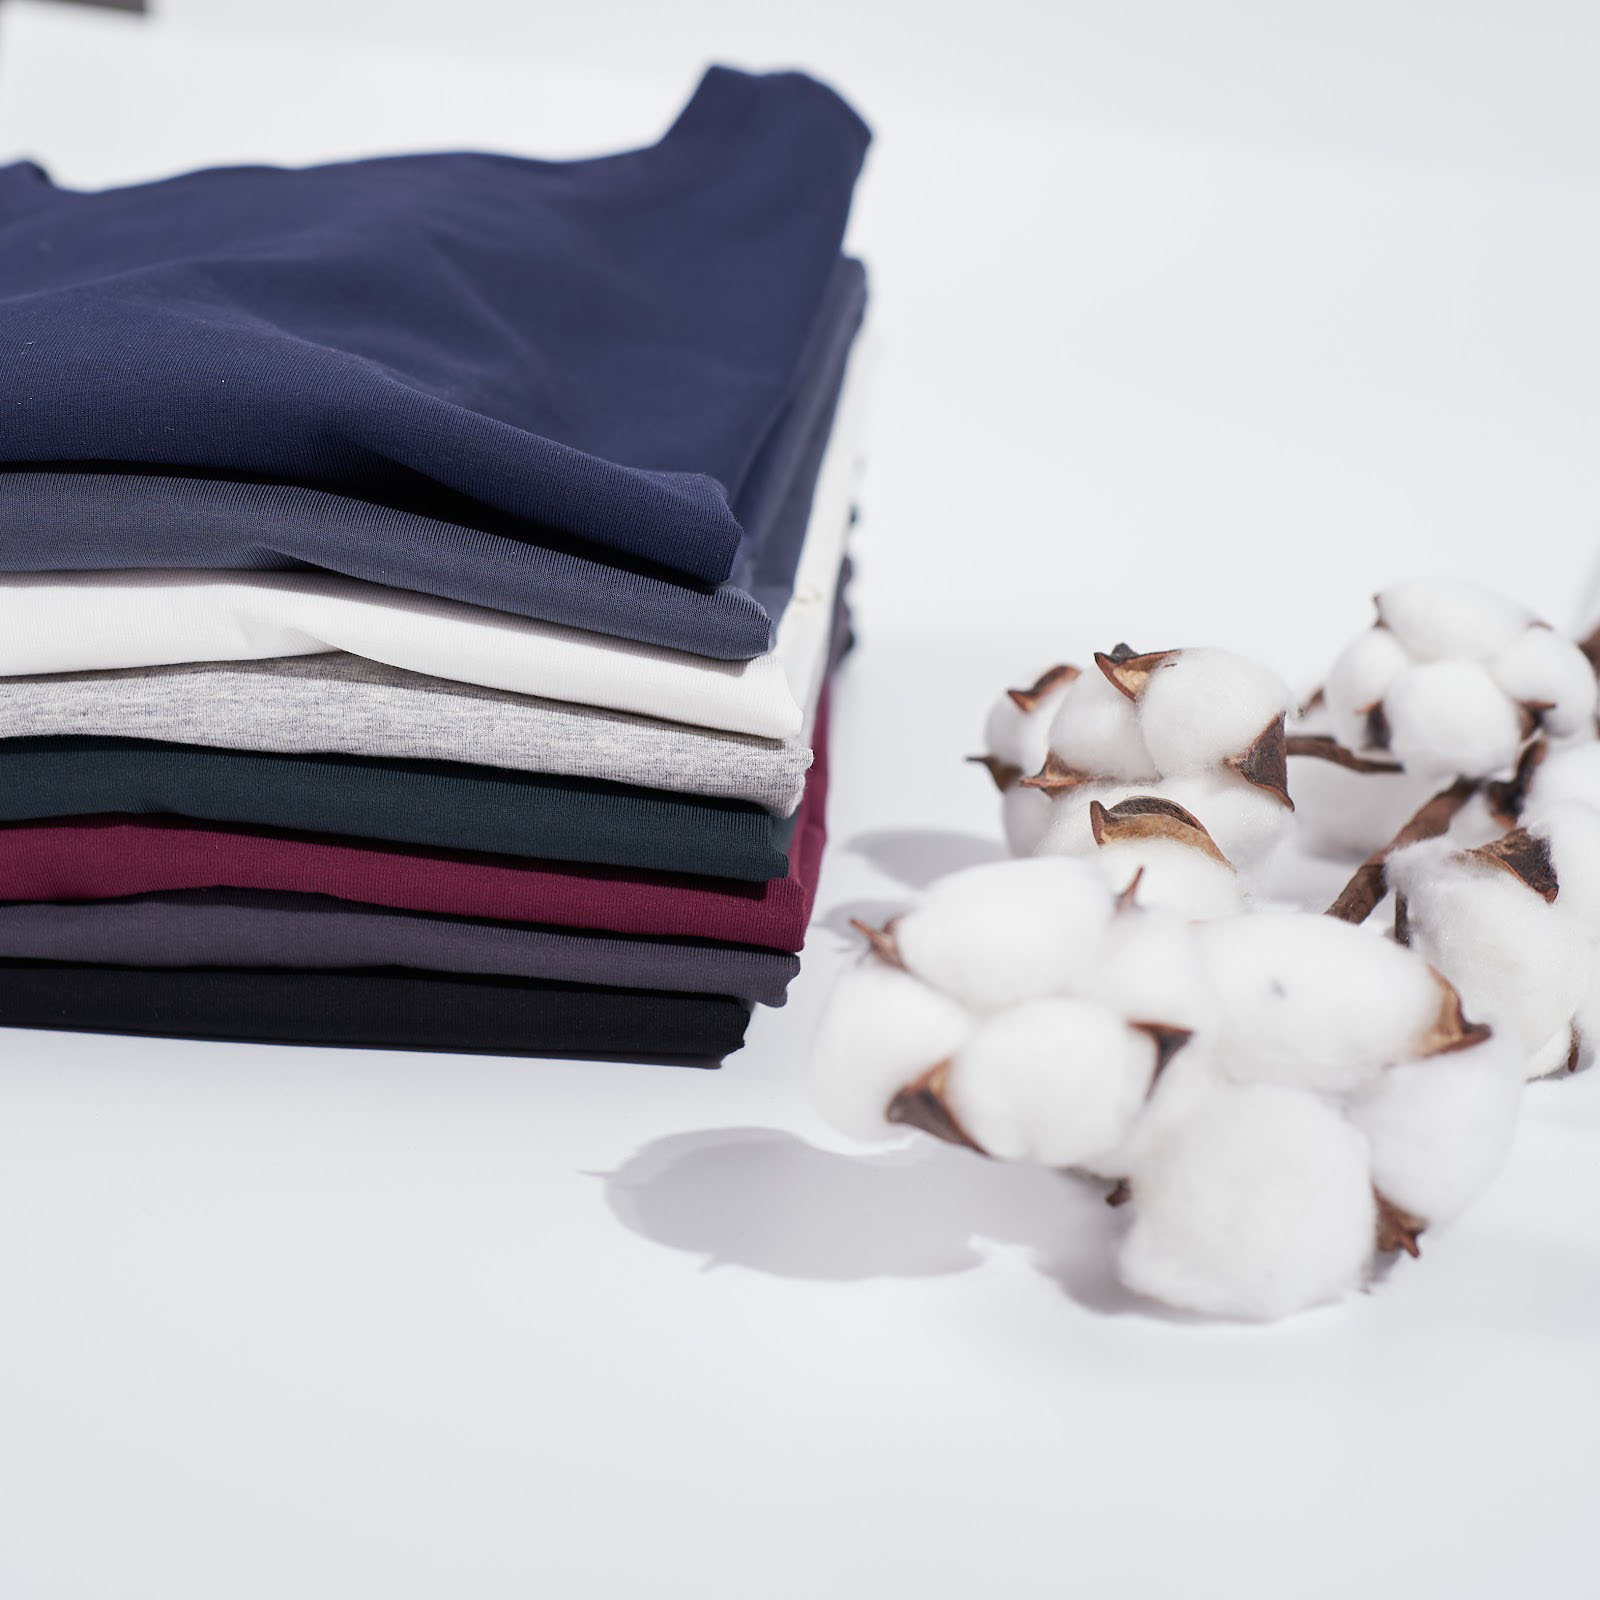 Vải thun cotton 100% là gì?